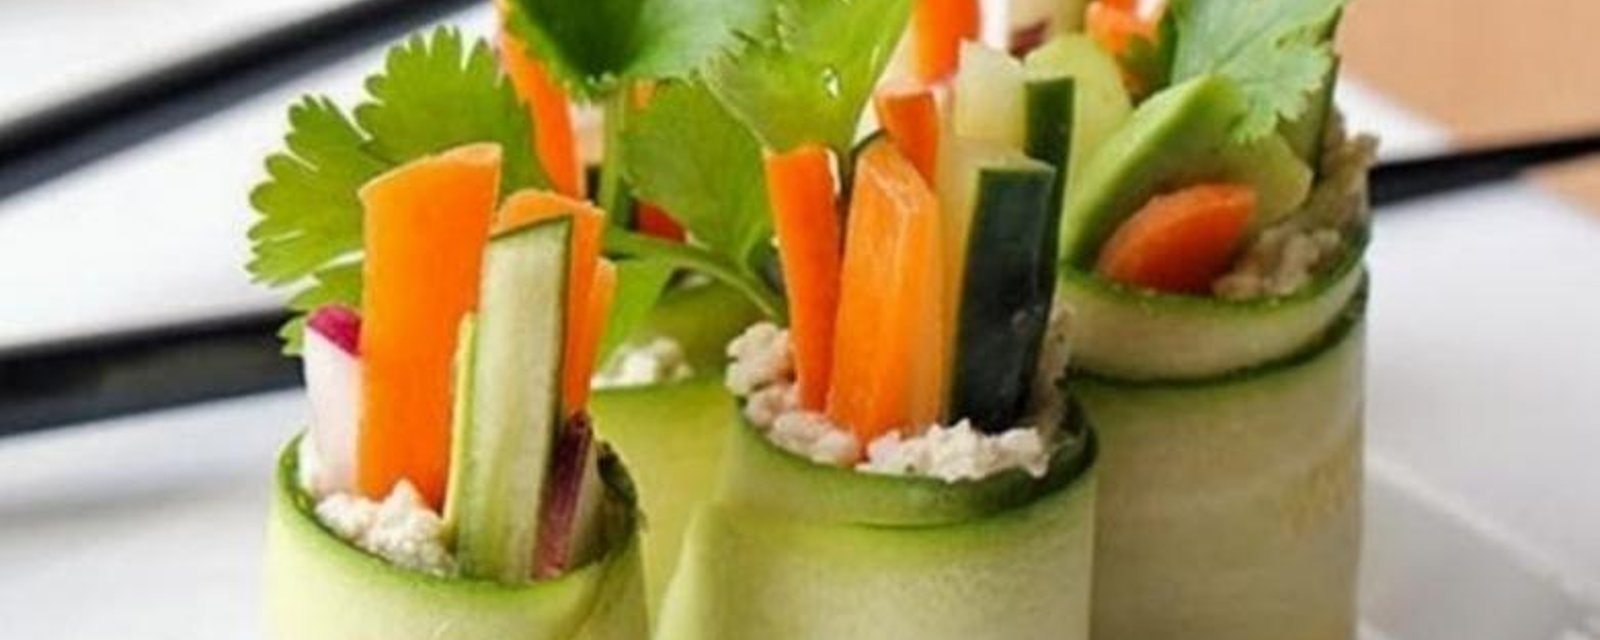 Rouleaux de courgettes accompagnés de petits légumes